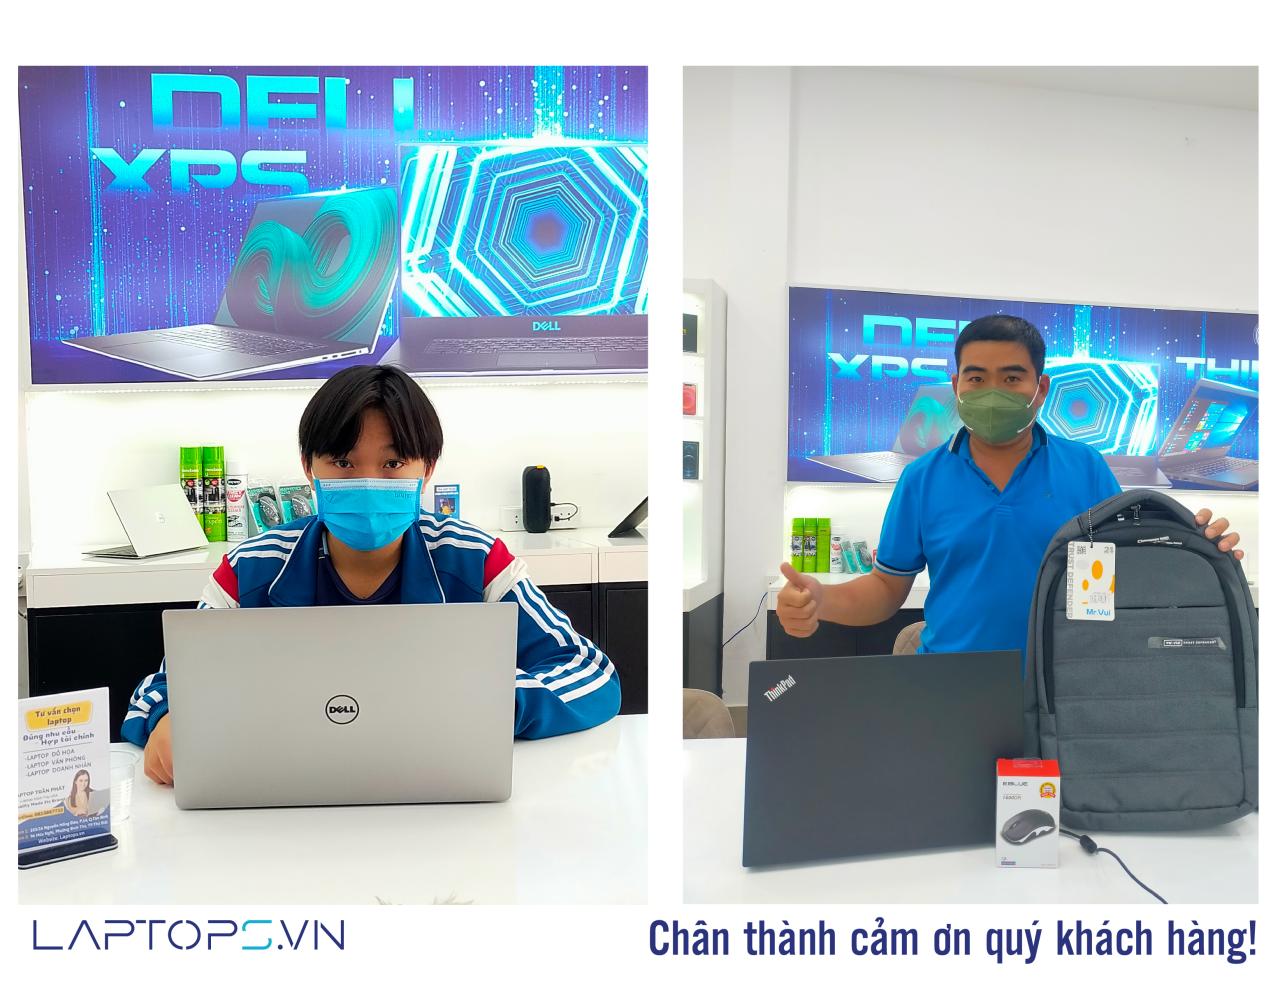 Khách hàng mua hàng tại Laptops.vn